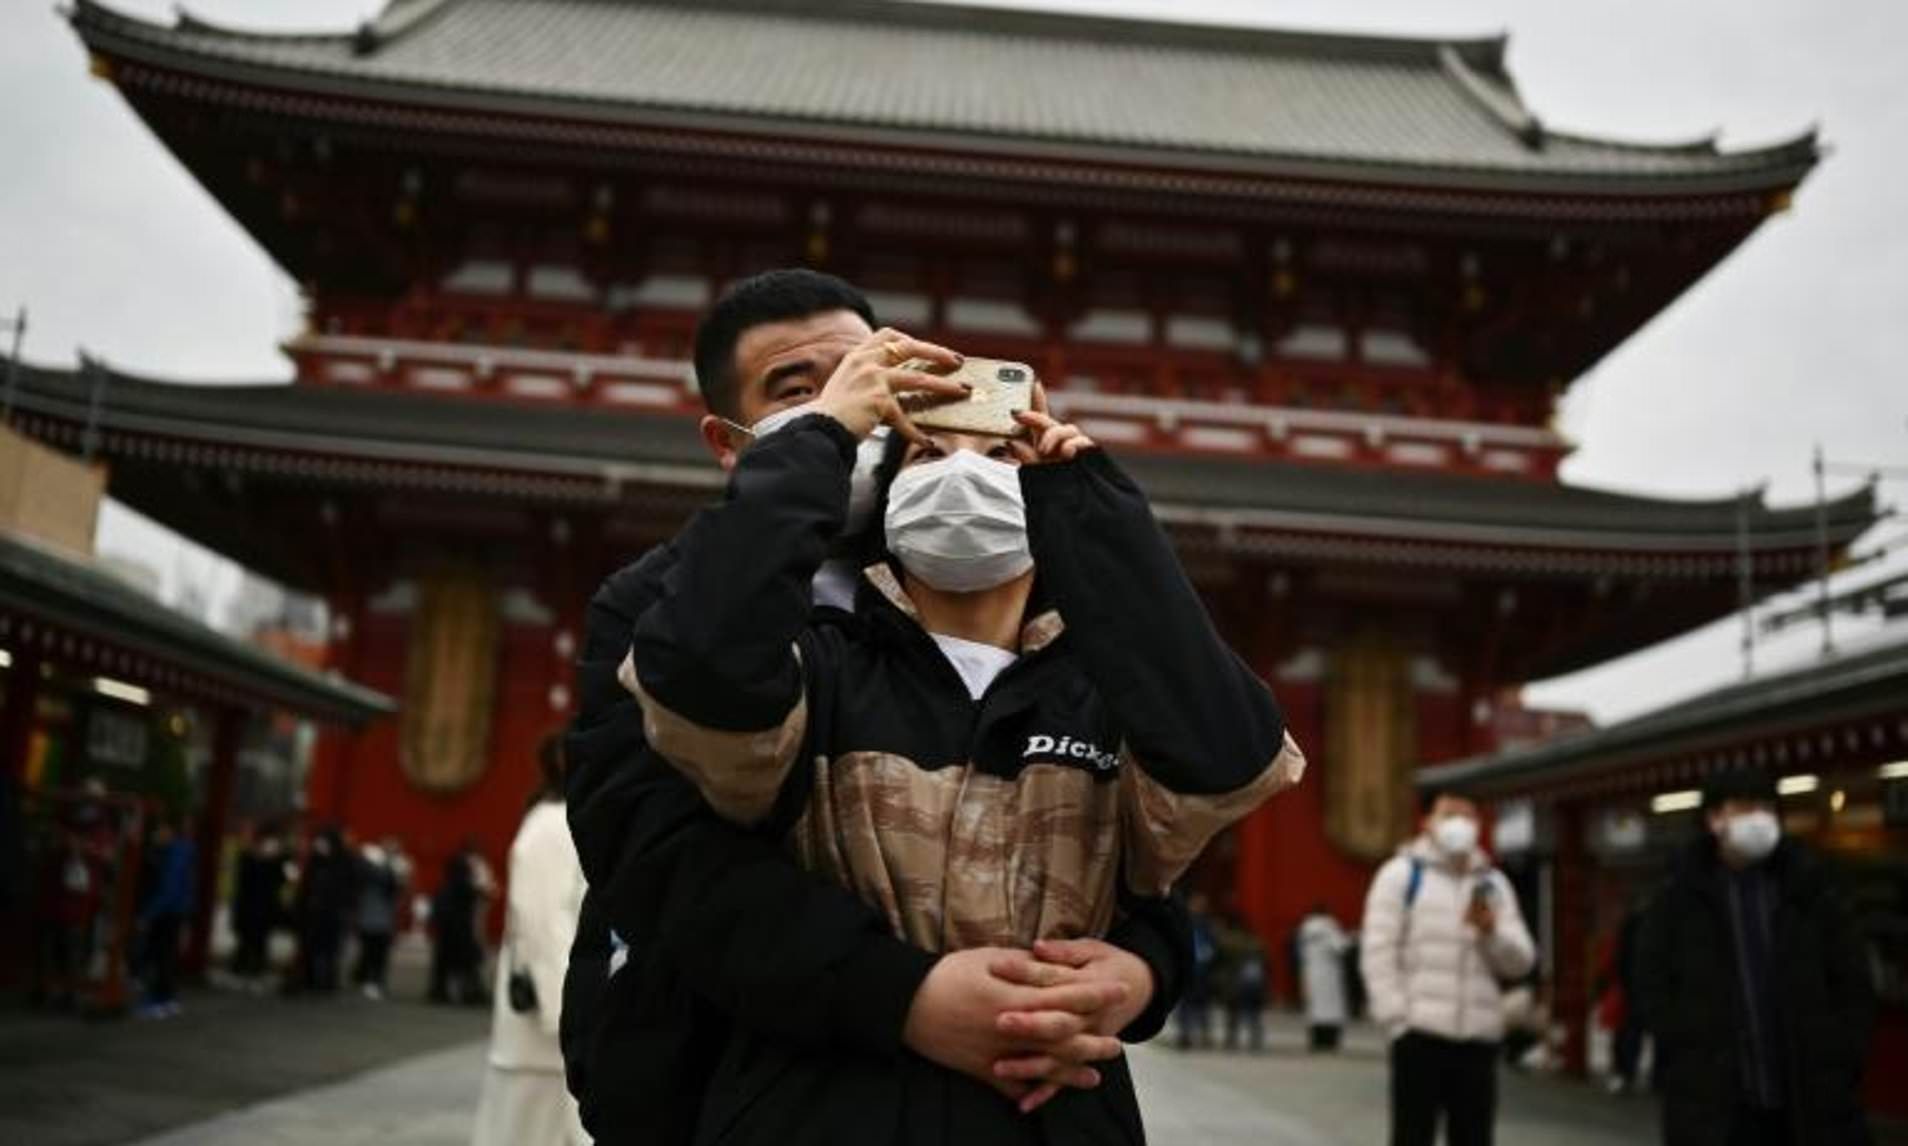 Tokyo residents wearing masks outside shrine